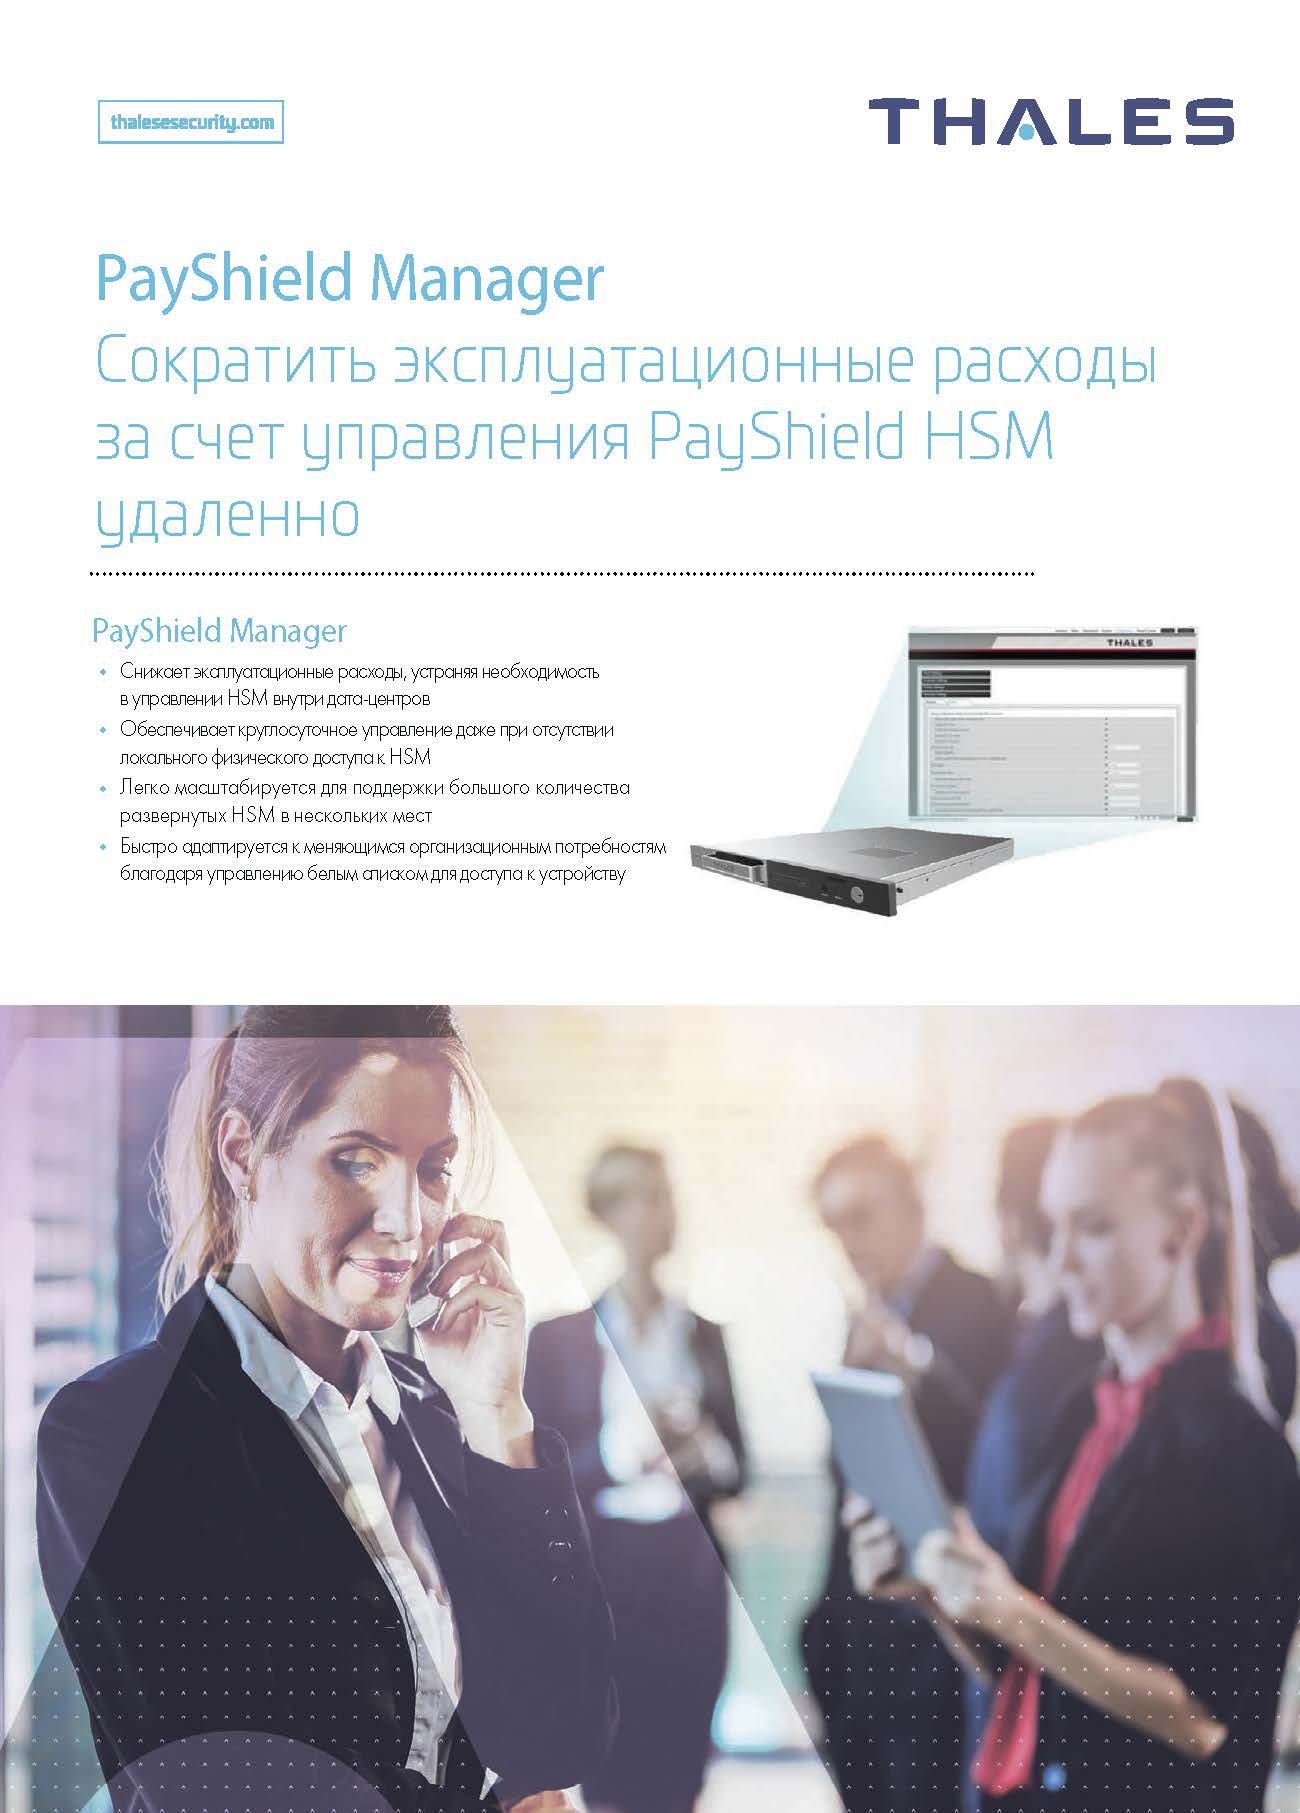 PayShield Manager Сократить эксплуатационные расходы за счет управления PayShield HSM удаленно